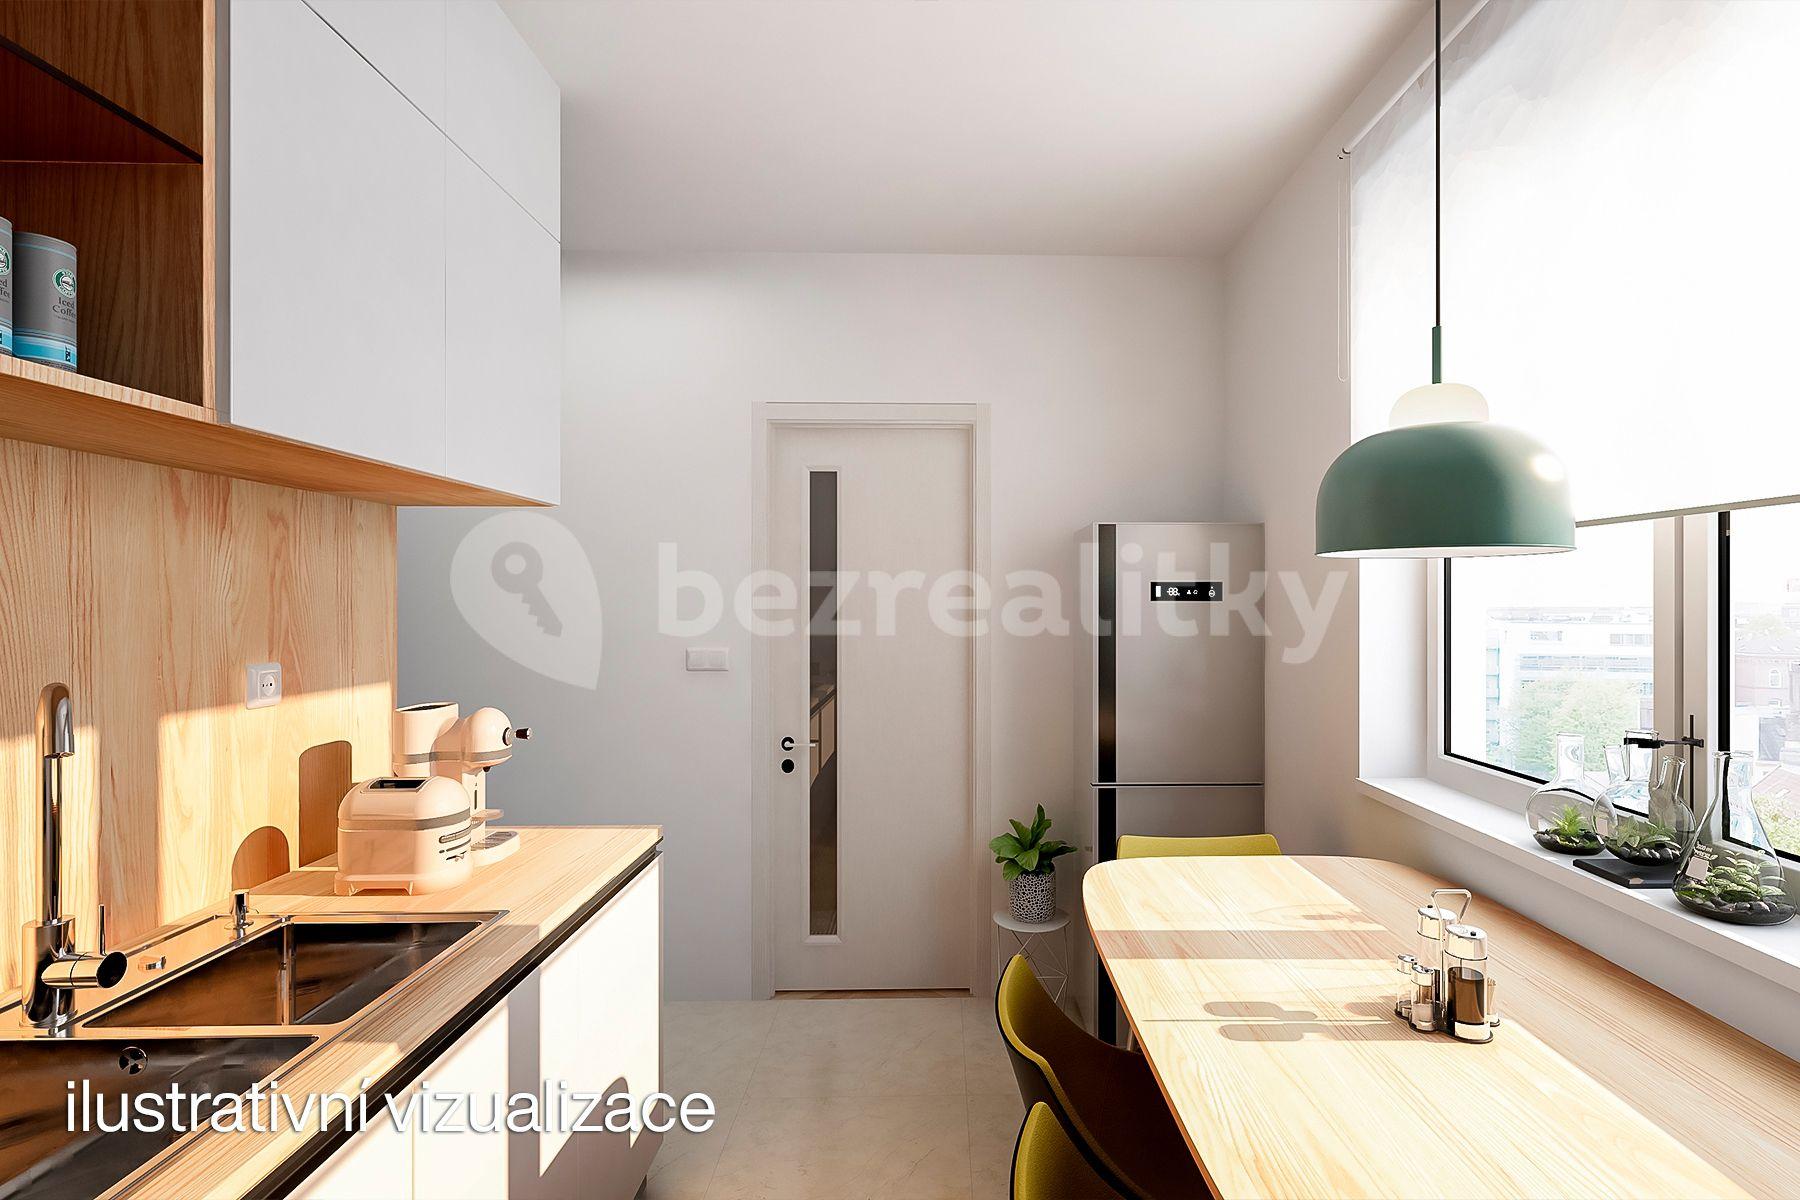 2 bedroom flat for sale, 56 m², Nový Svět, Harrachov, Liberecký Region